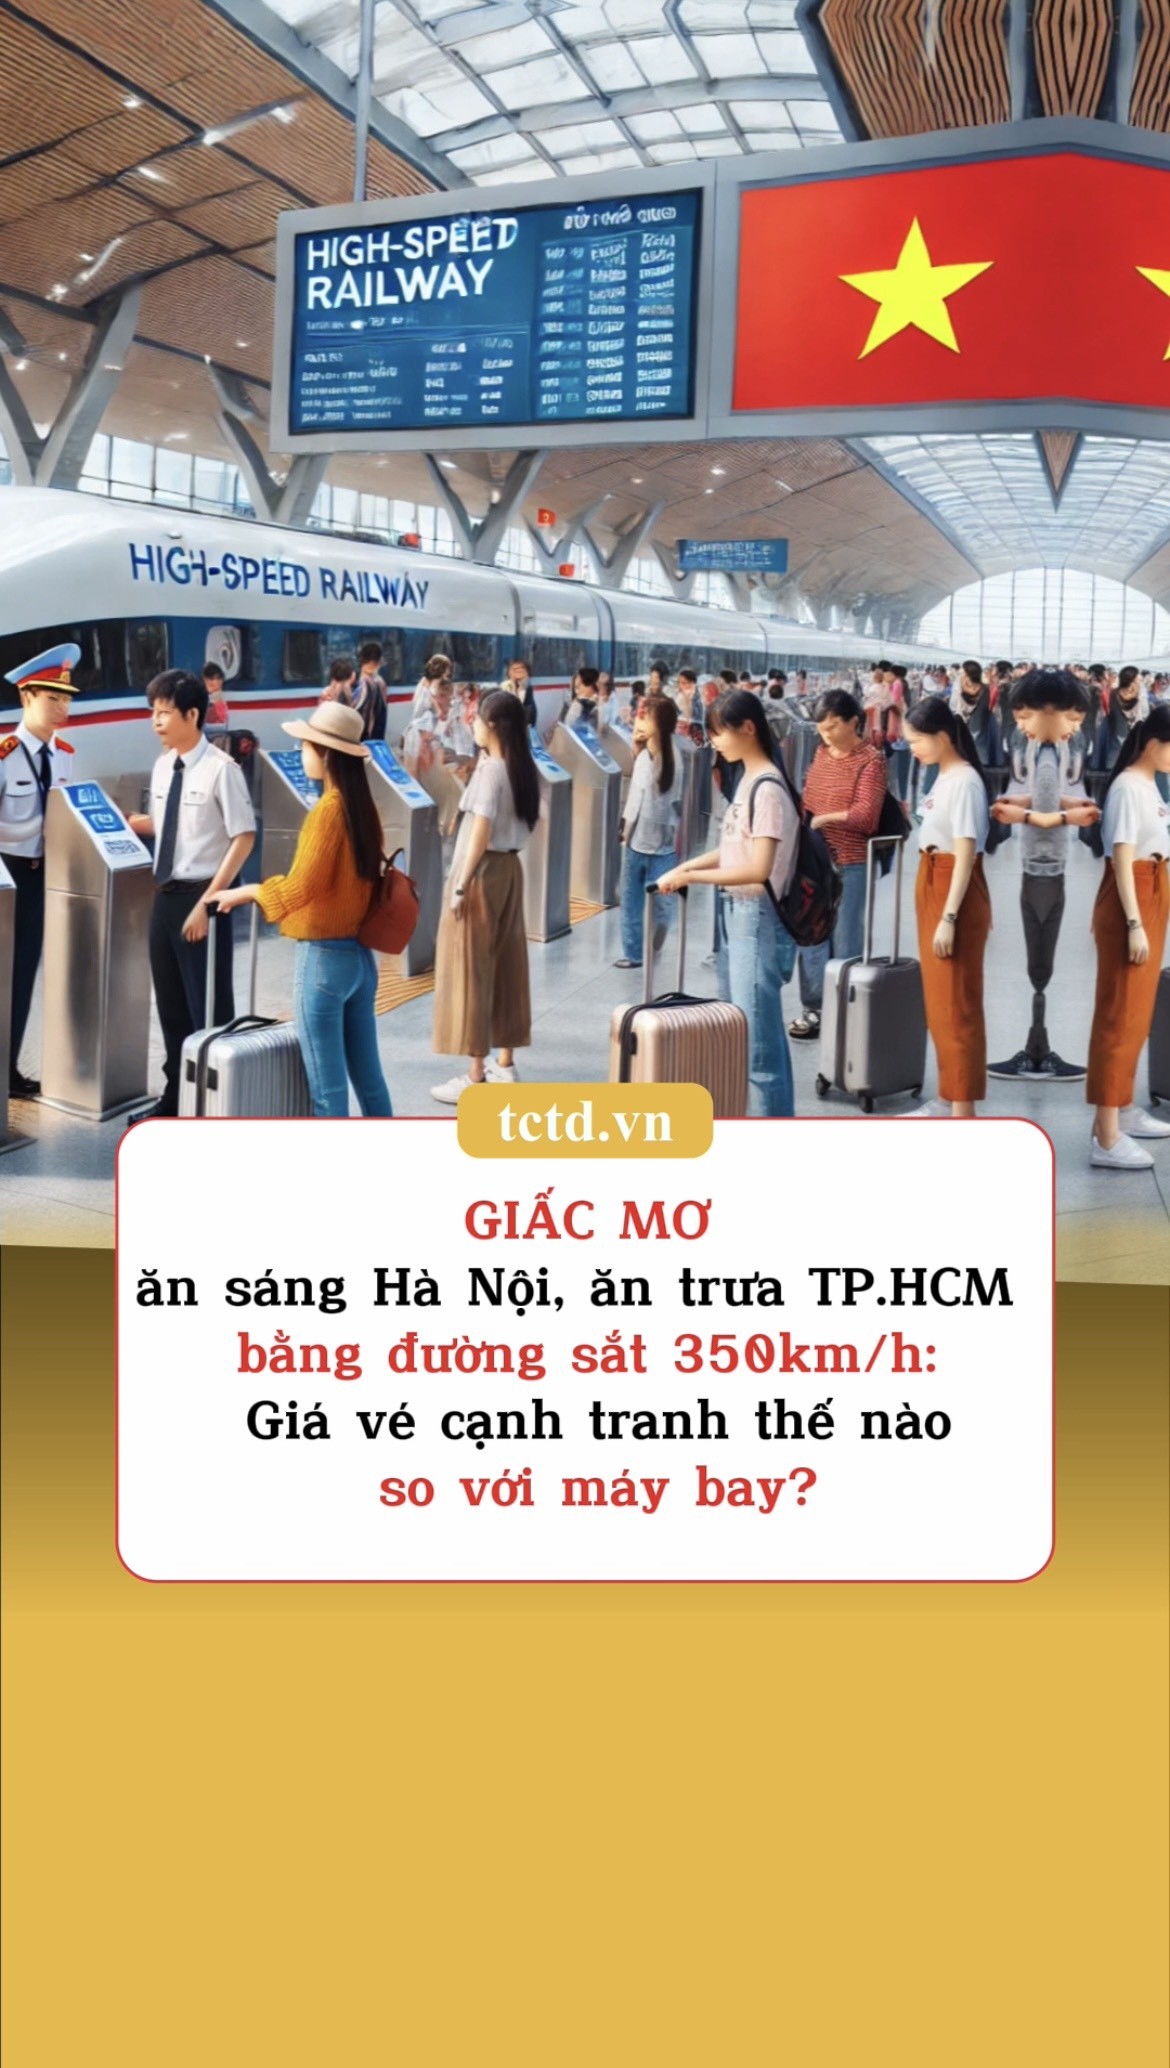 Giấc mơ ăn sáng Hà Nội, ăn trưa TP.HCM bằng đường sắt 350km/h: Giá vé cạnh tranh thế nào so với máy bay?